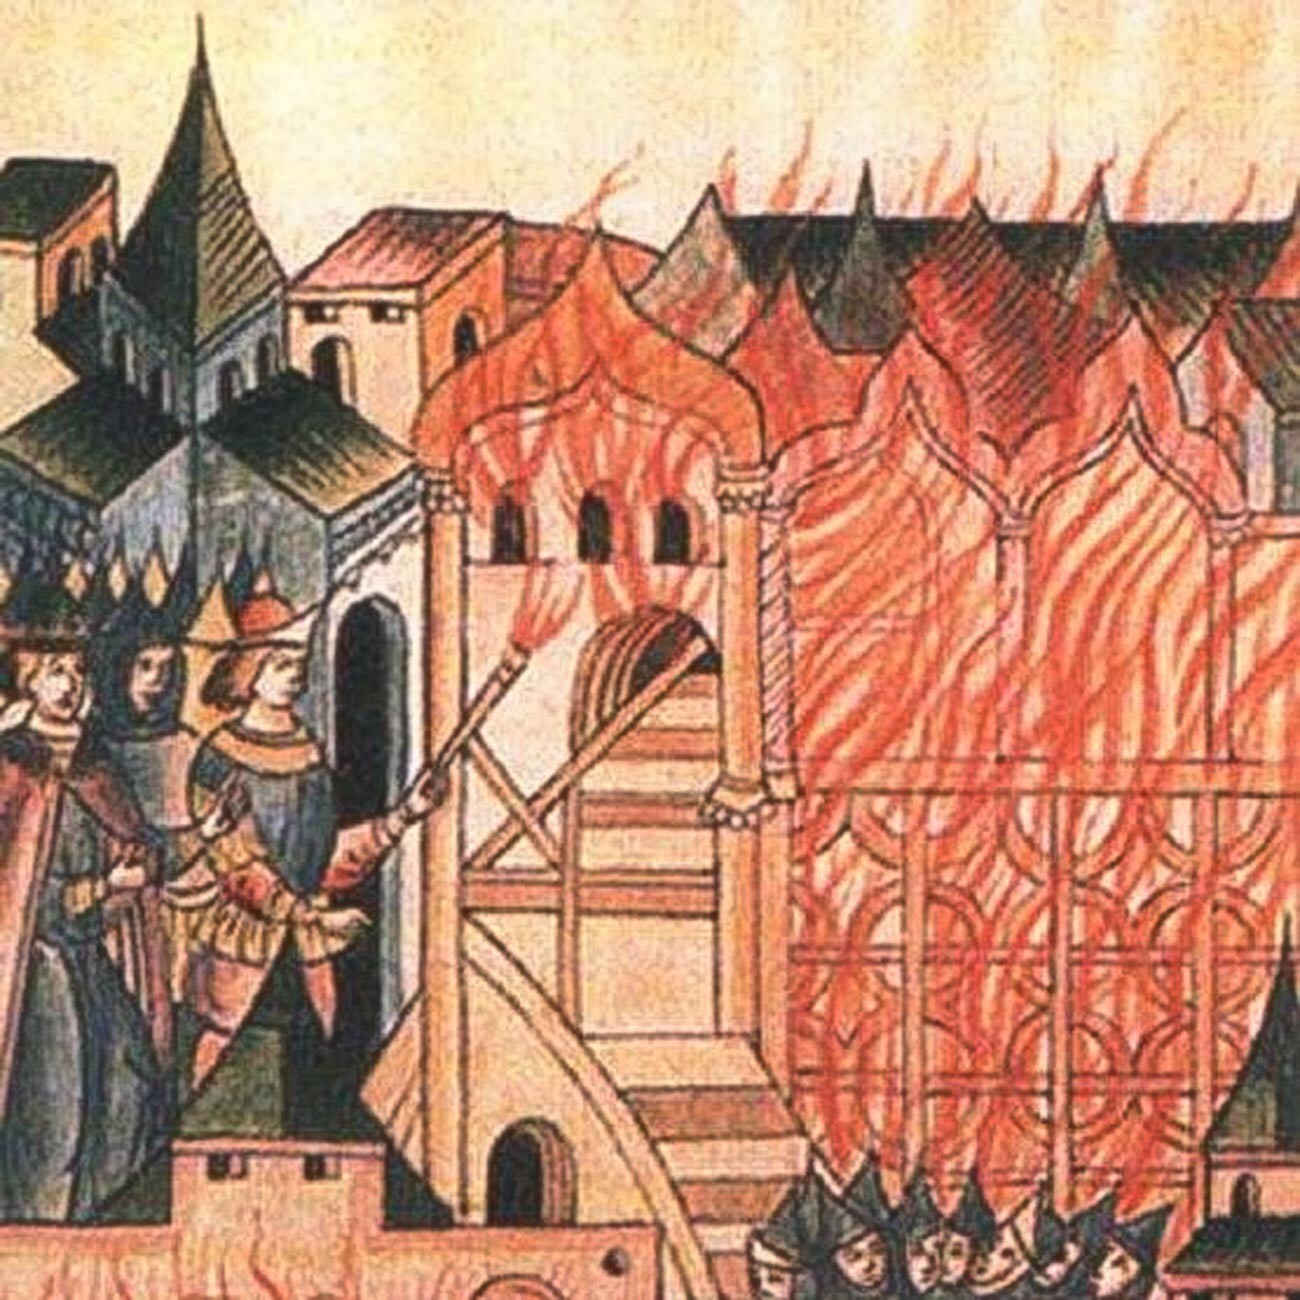 La rivolta di Tver del 1328 raccontata in una cronaca illustrata russa, XVI secolo. In questa immagine, il popolo di Tver brucia il palazzo con dentro Cholkhan, il cugino di Uzbeg Khan